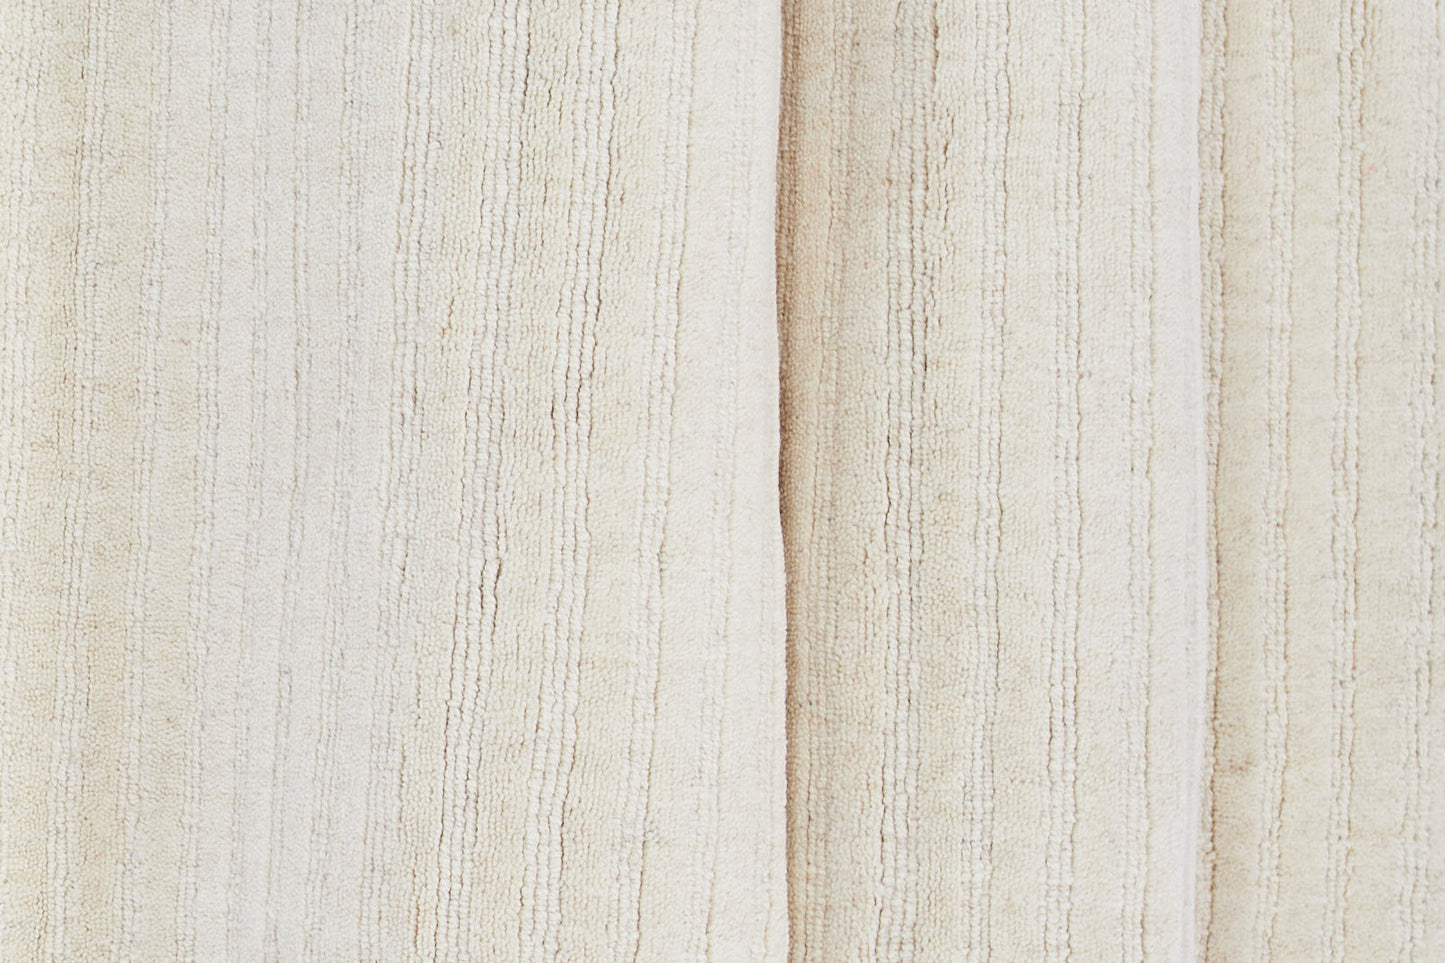 Milton - Gulvtæppe, Uld/polyester/bomuld - 200*70, Rektangulær, Hvid